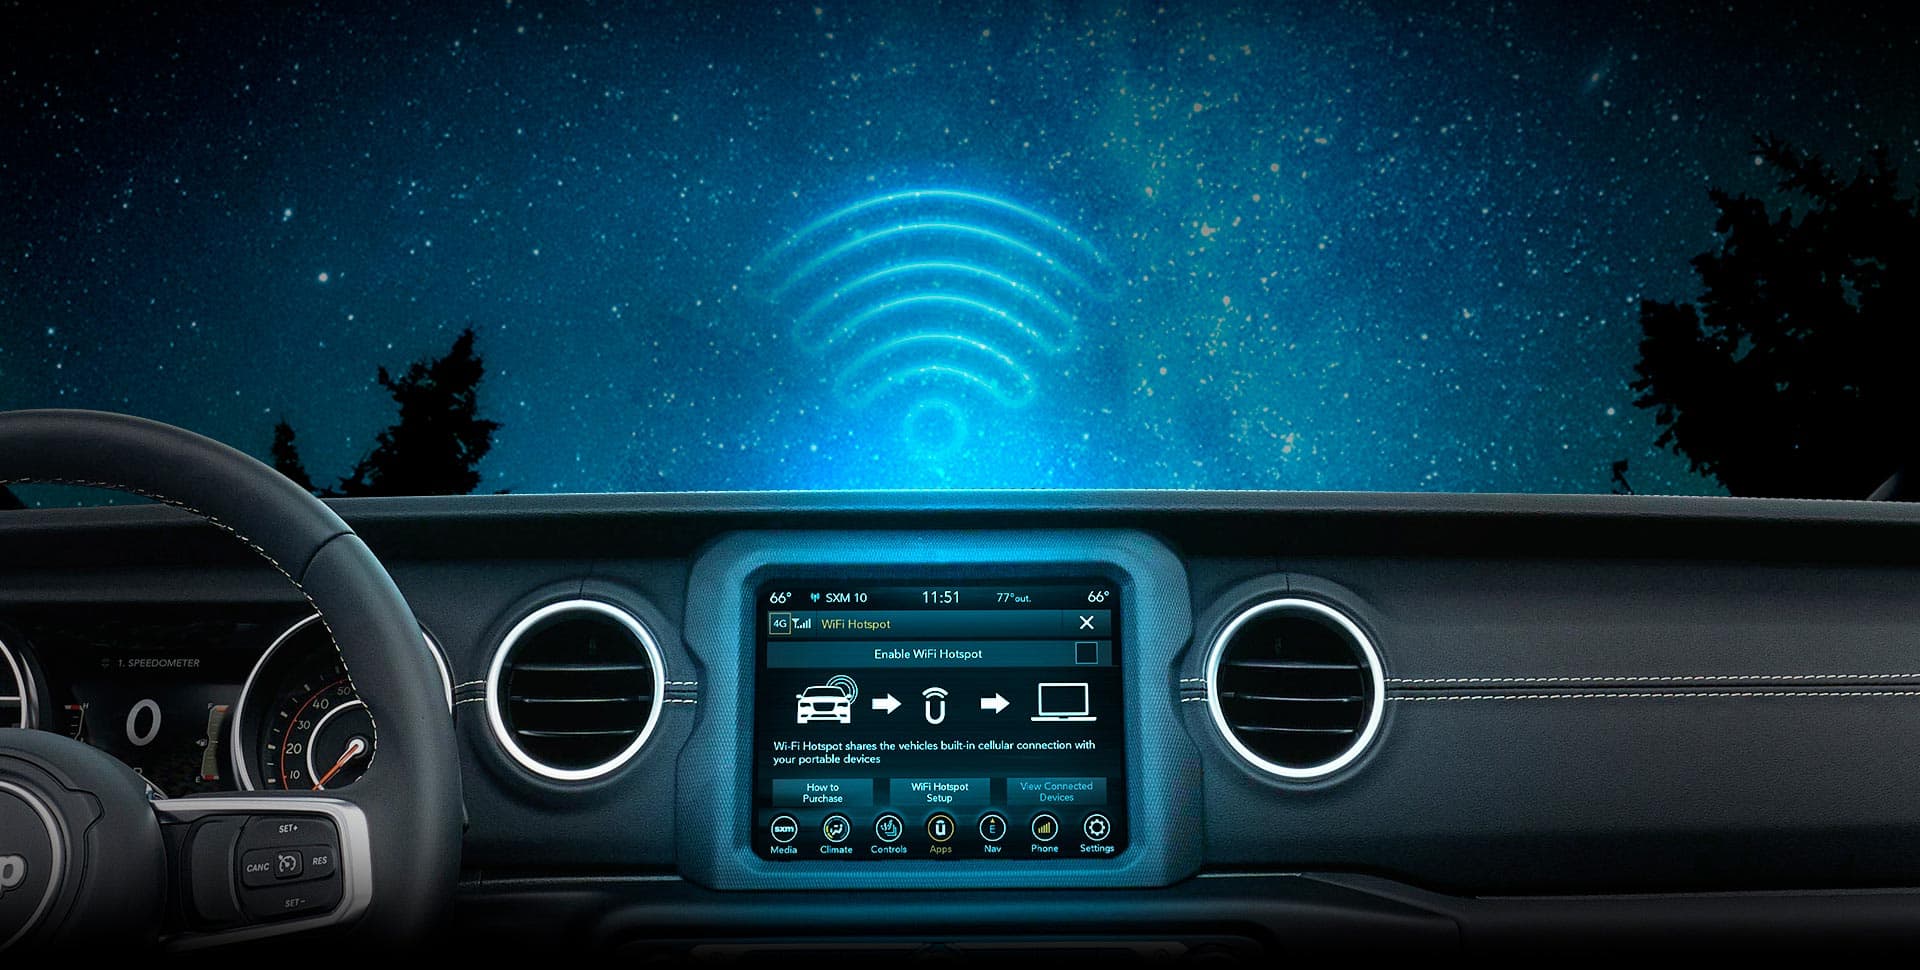 Pantalla táctil Uconnect de 8.4 pulgadas de la Jeep Gladiator 2023, en la que se muestra la pantalla de los puntos de acceso Wi-Fi.